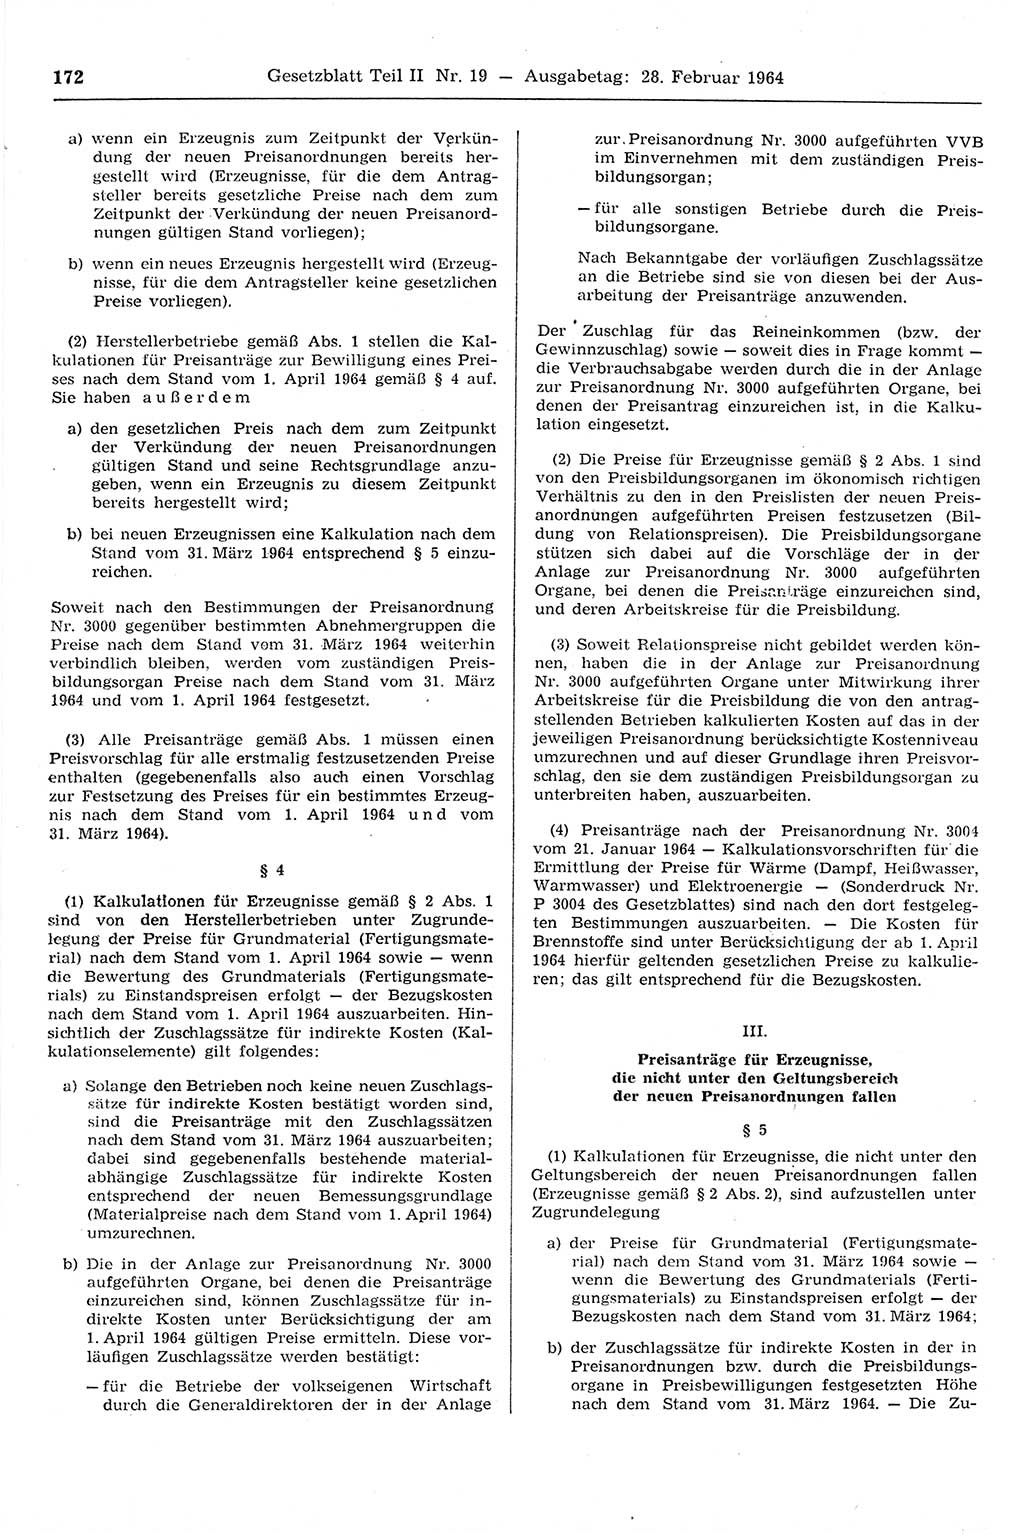 Gesetzblatt (GBl.) der Deutschen Demokratischen Republik (DDR) Teil ⅠⅠ 1964, Seite 172 (GBl. DDR ⅠⅠ 1964, S. 172)